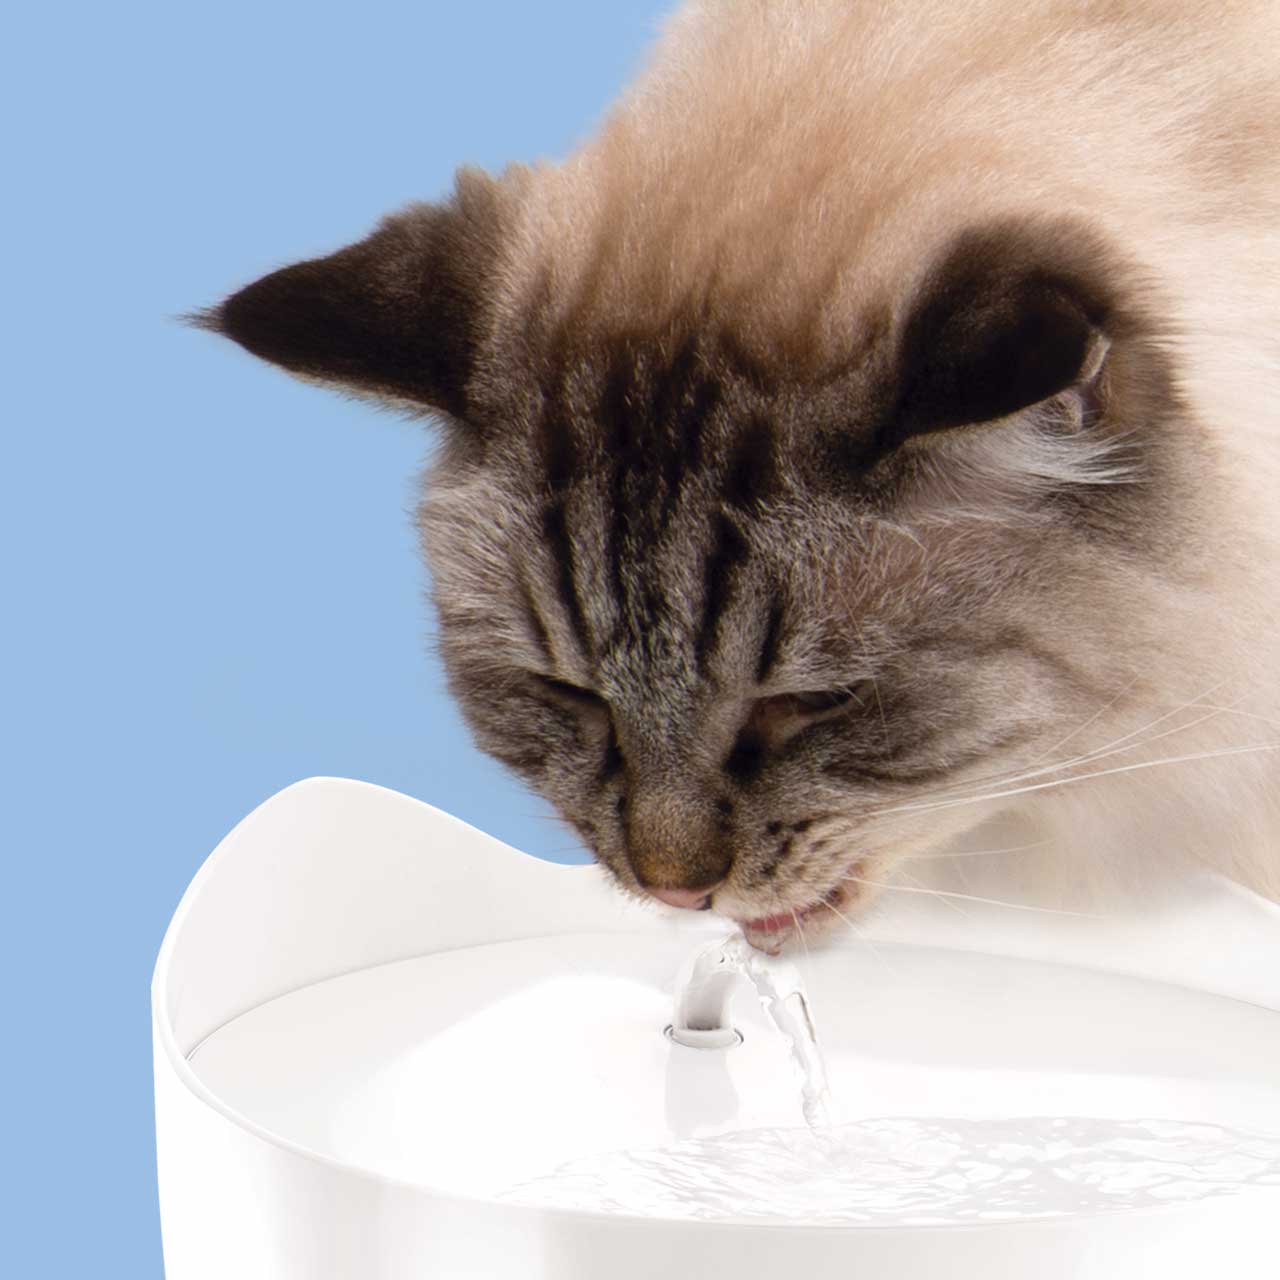 Eine Katze, die aus einem PIXI Trinkbrunnen in einer ergonomisch bequemen Haltung trinkt